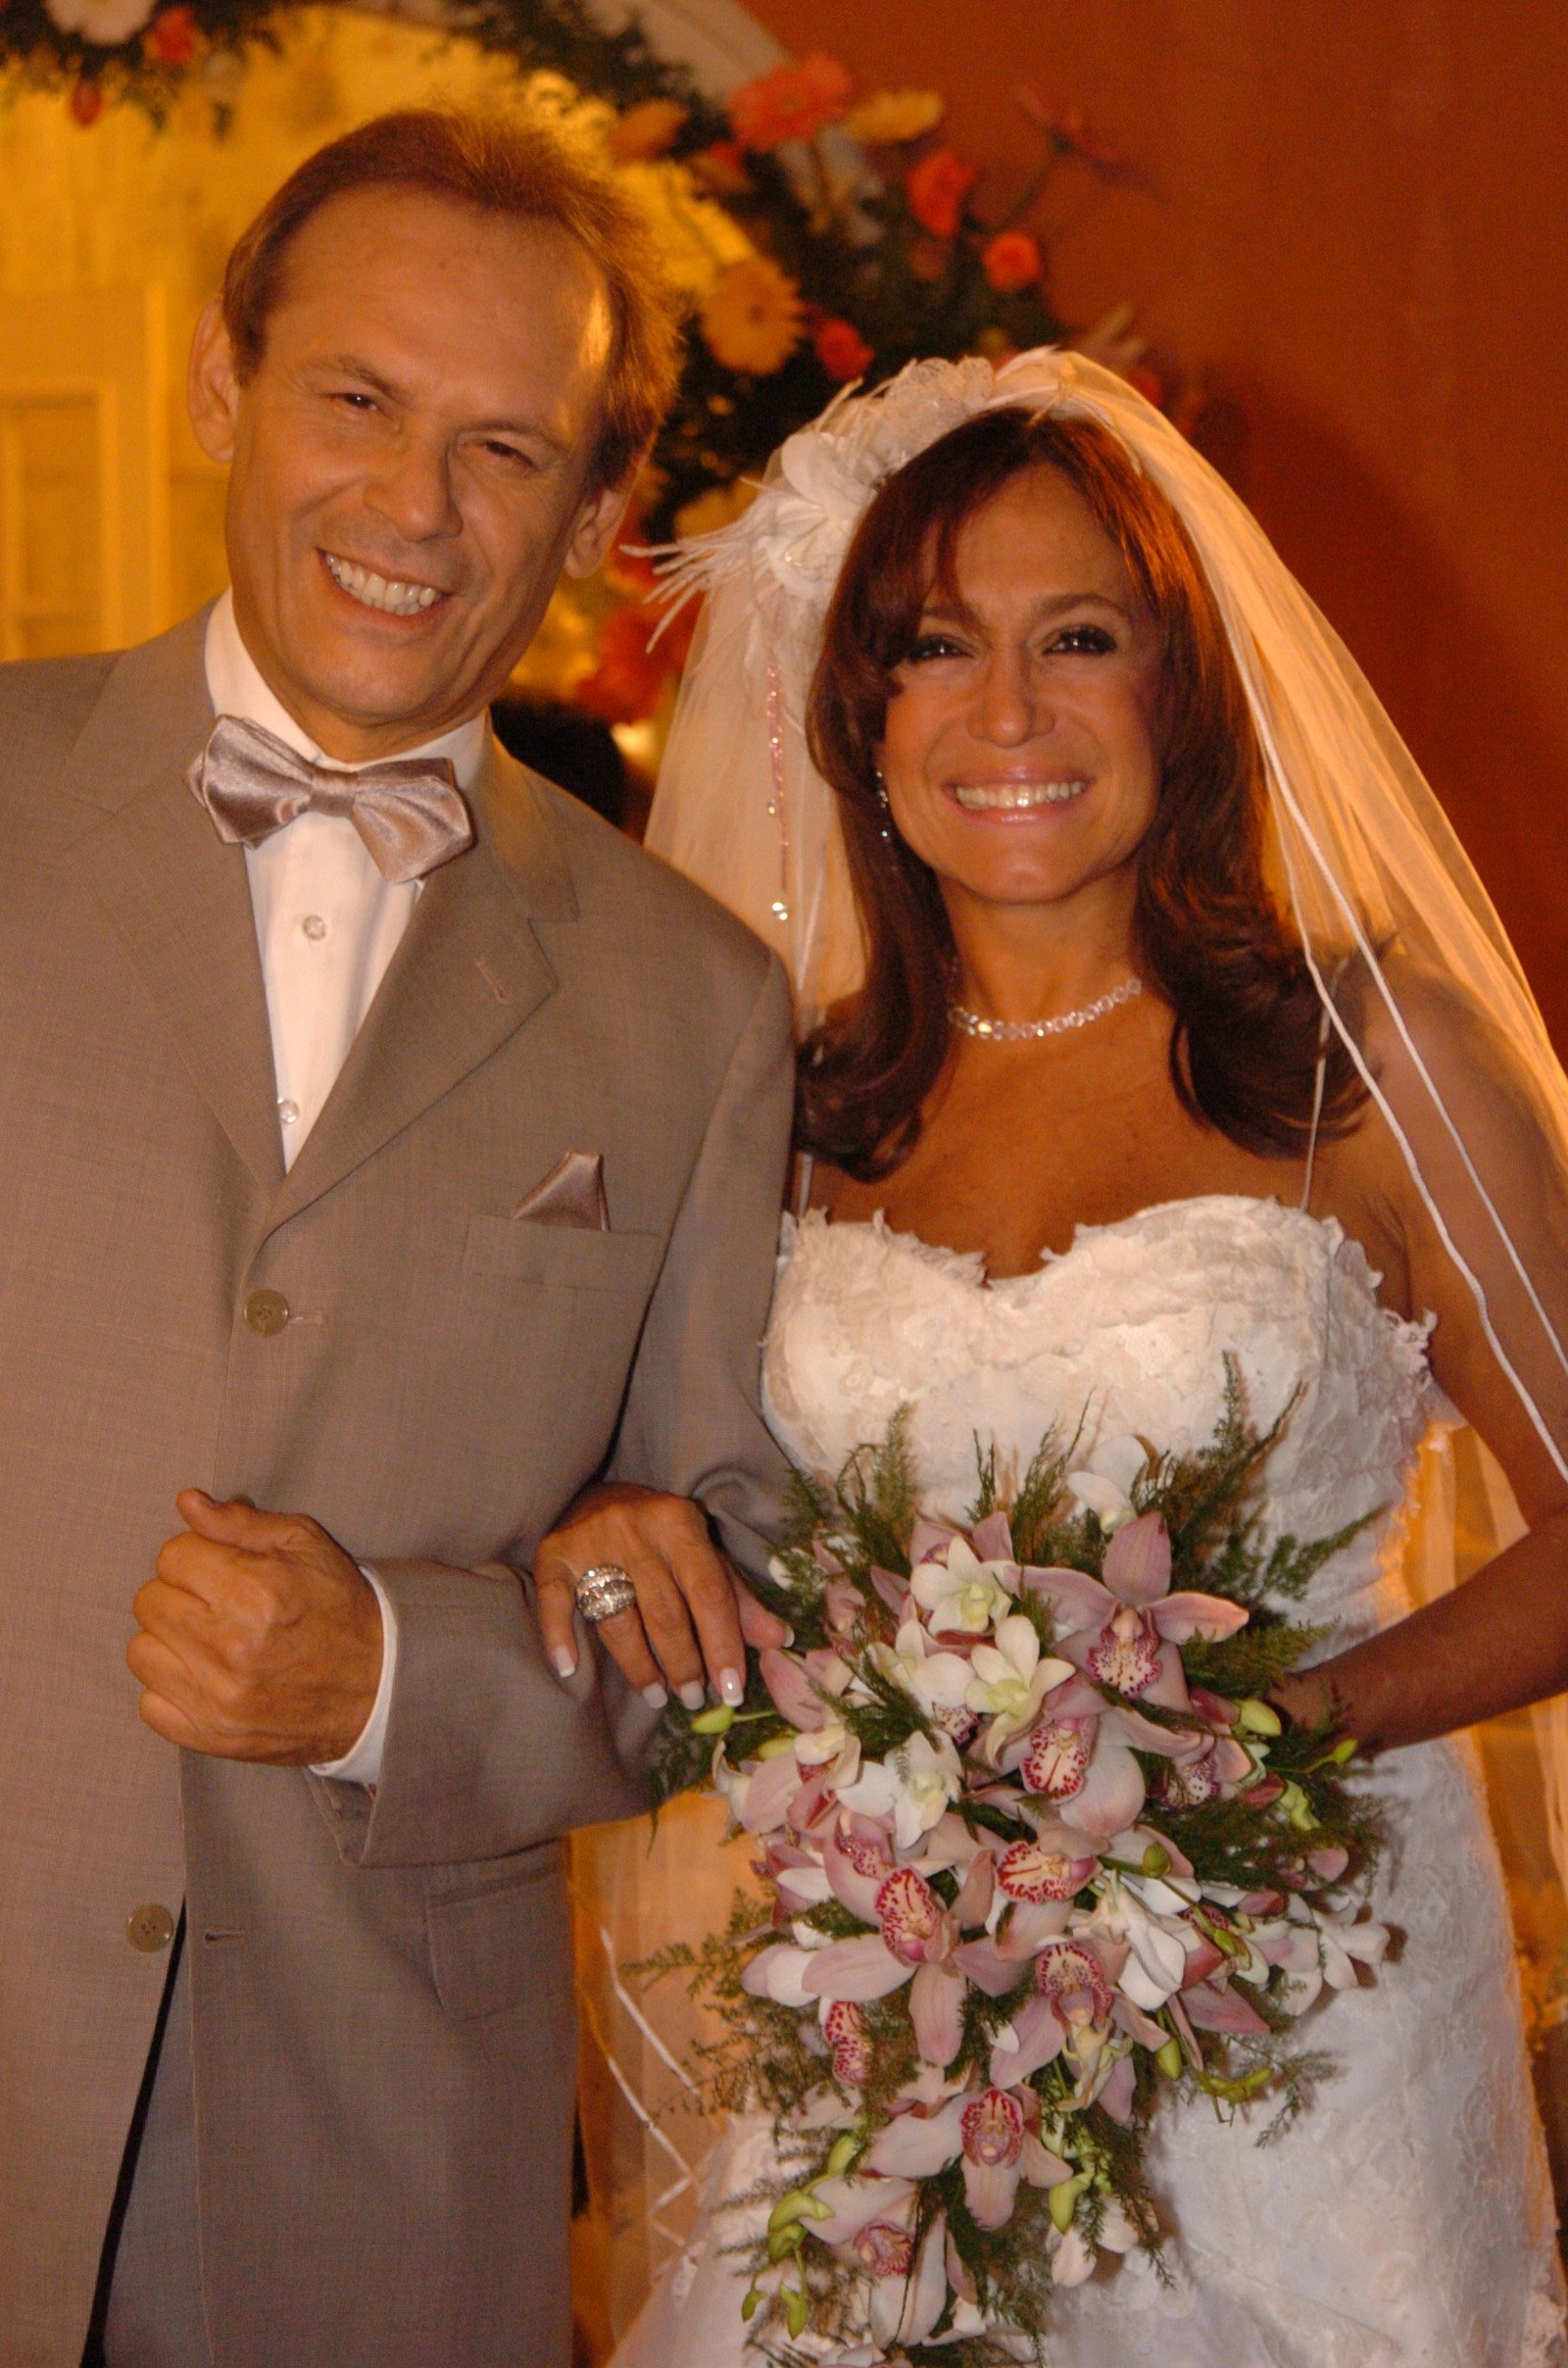 Em “Senhora do destino” (2004), ela interpretou a personagem Maria do Carmo e fez par romântico com José WilkerDivulgação